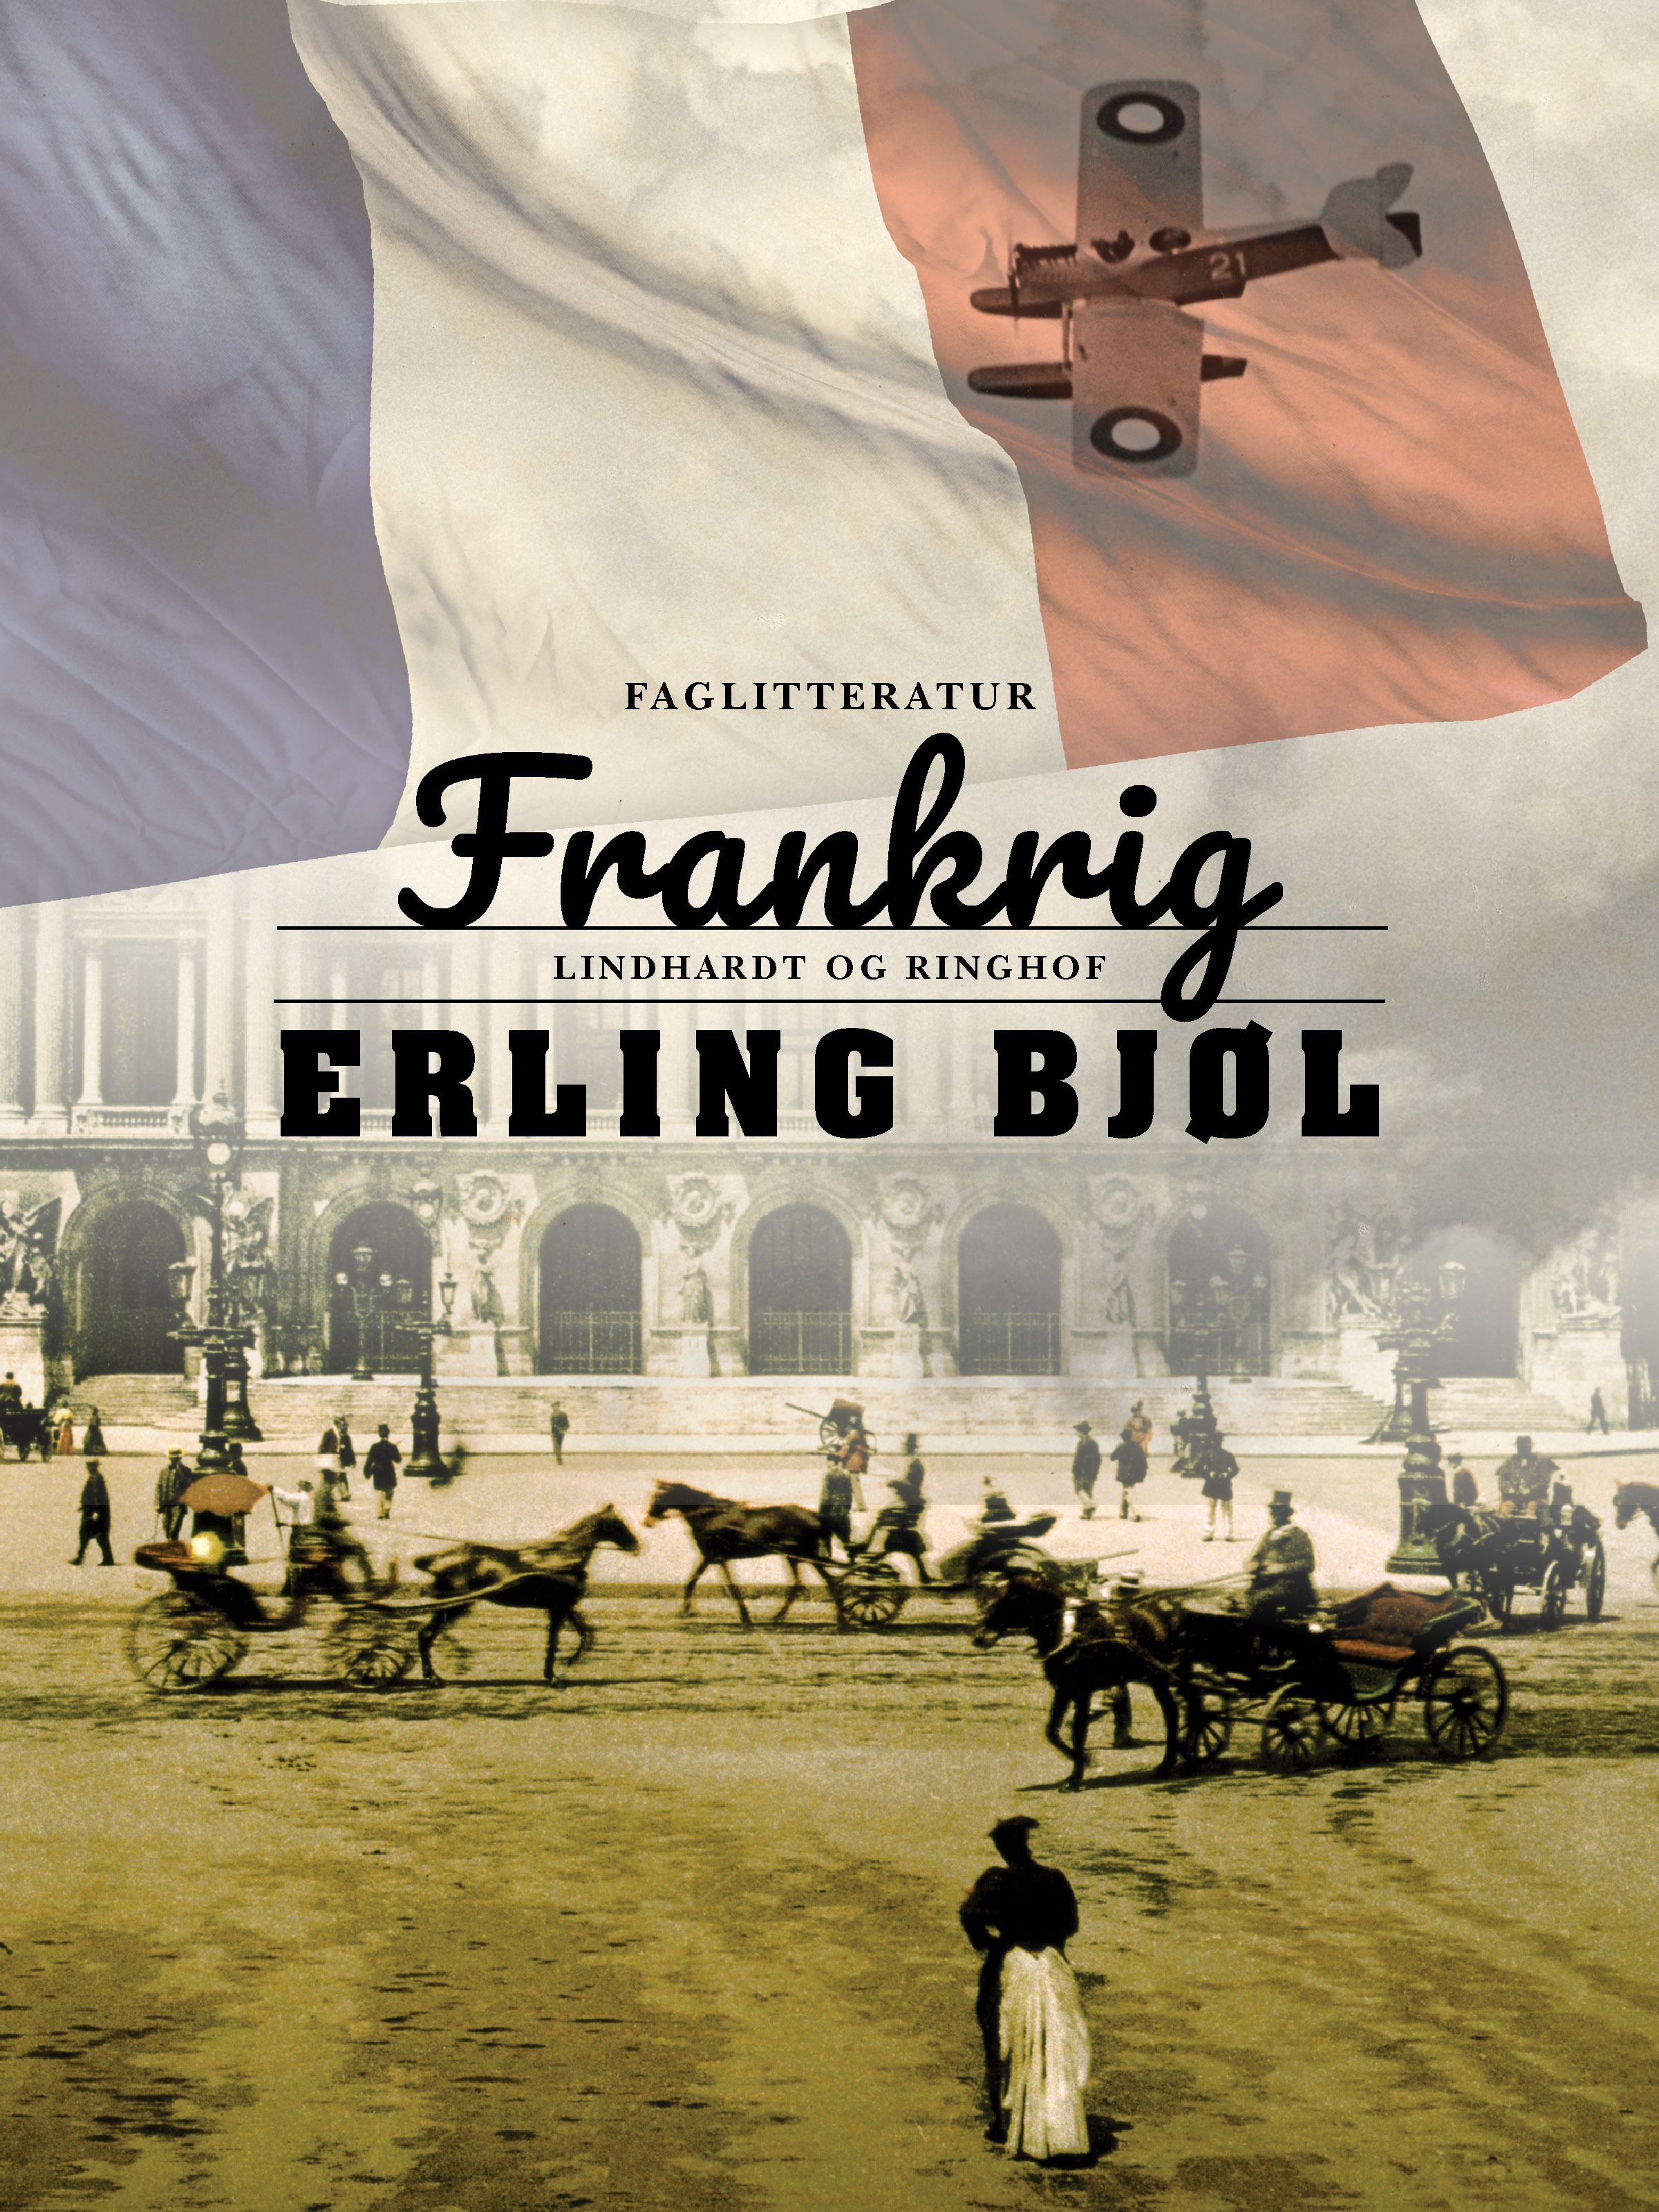 Frankrig, e-bok av Erling Bjøl